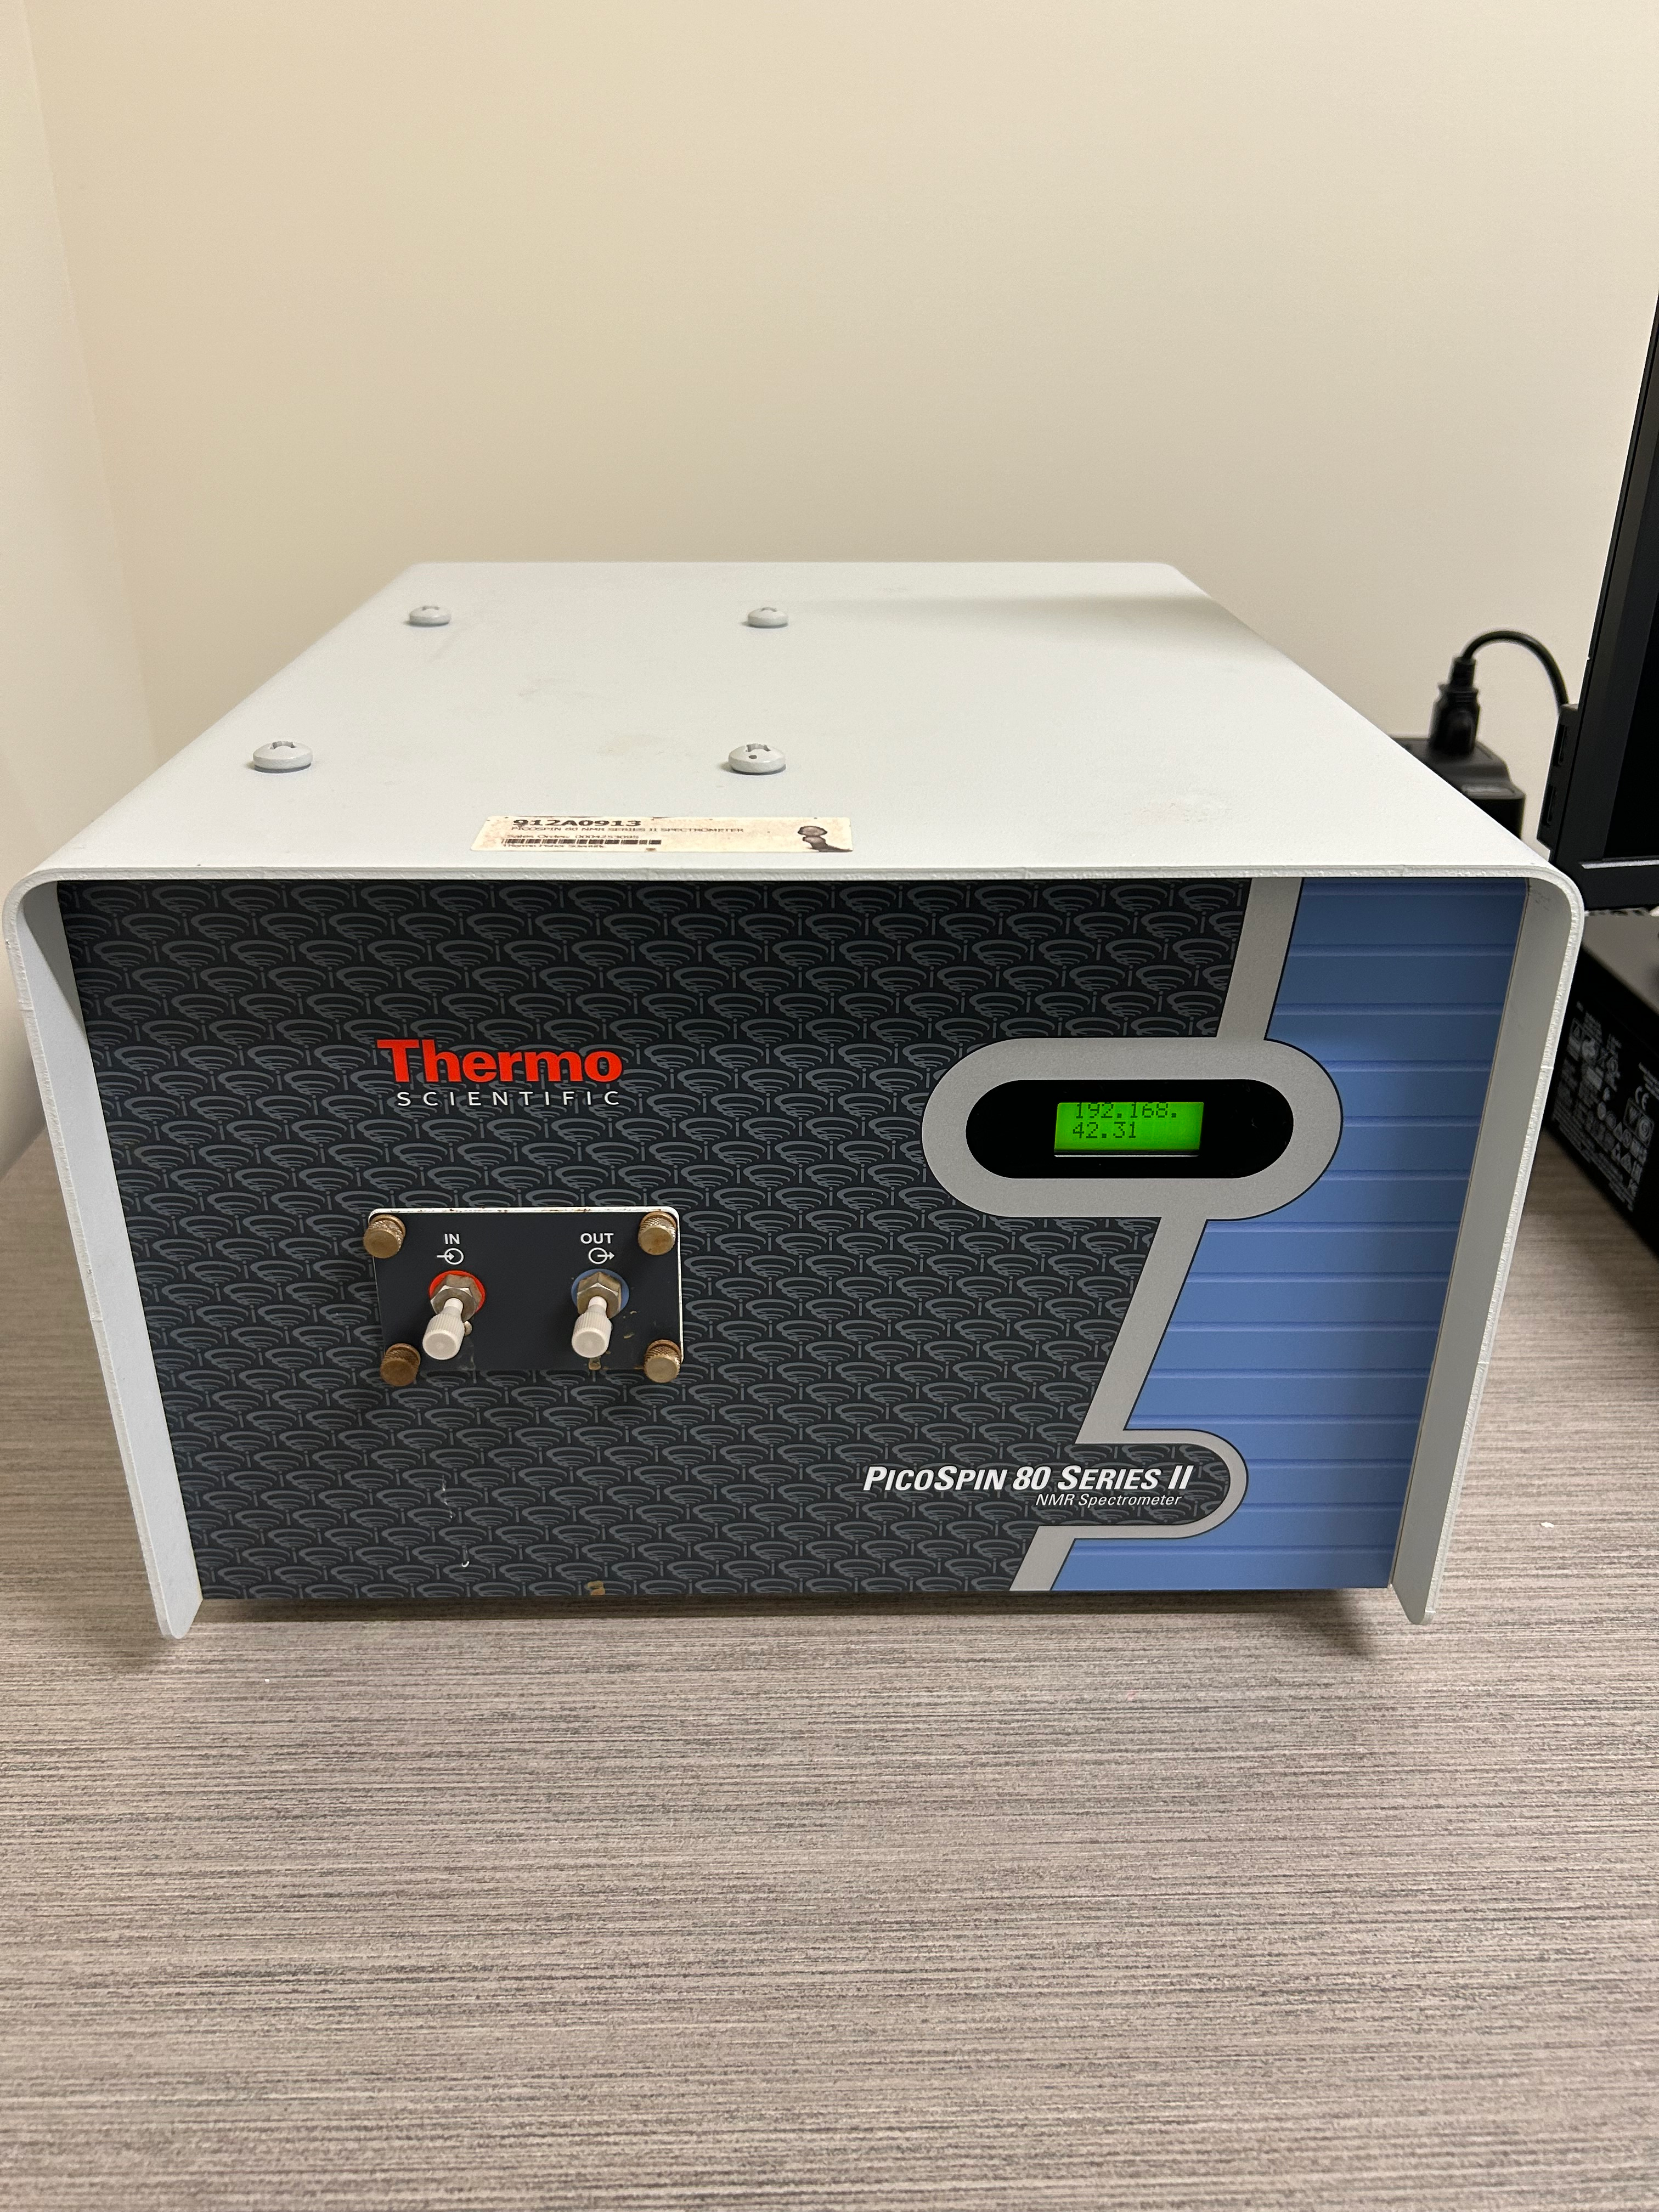 Thermo Scientific picoSpin 80 NMR Spectrometer